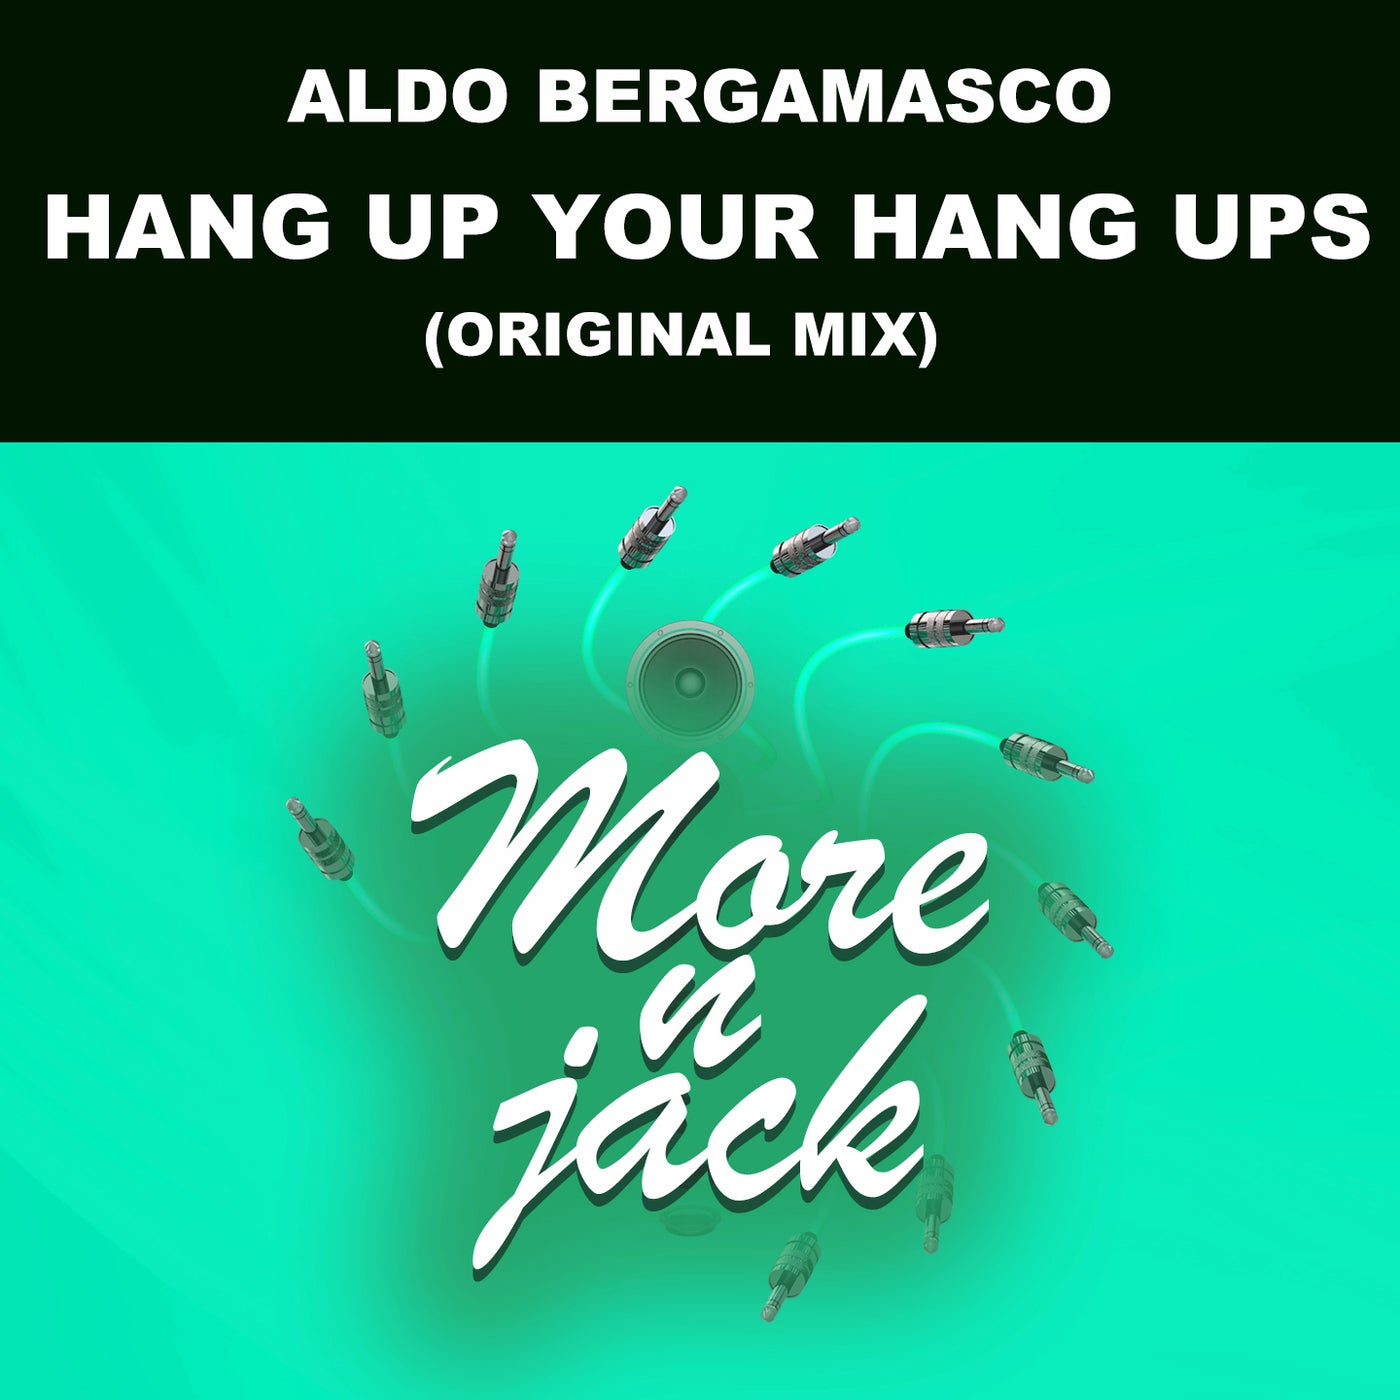 HANG UP YOUR HANG UPS - Original Mix